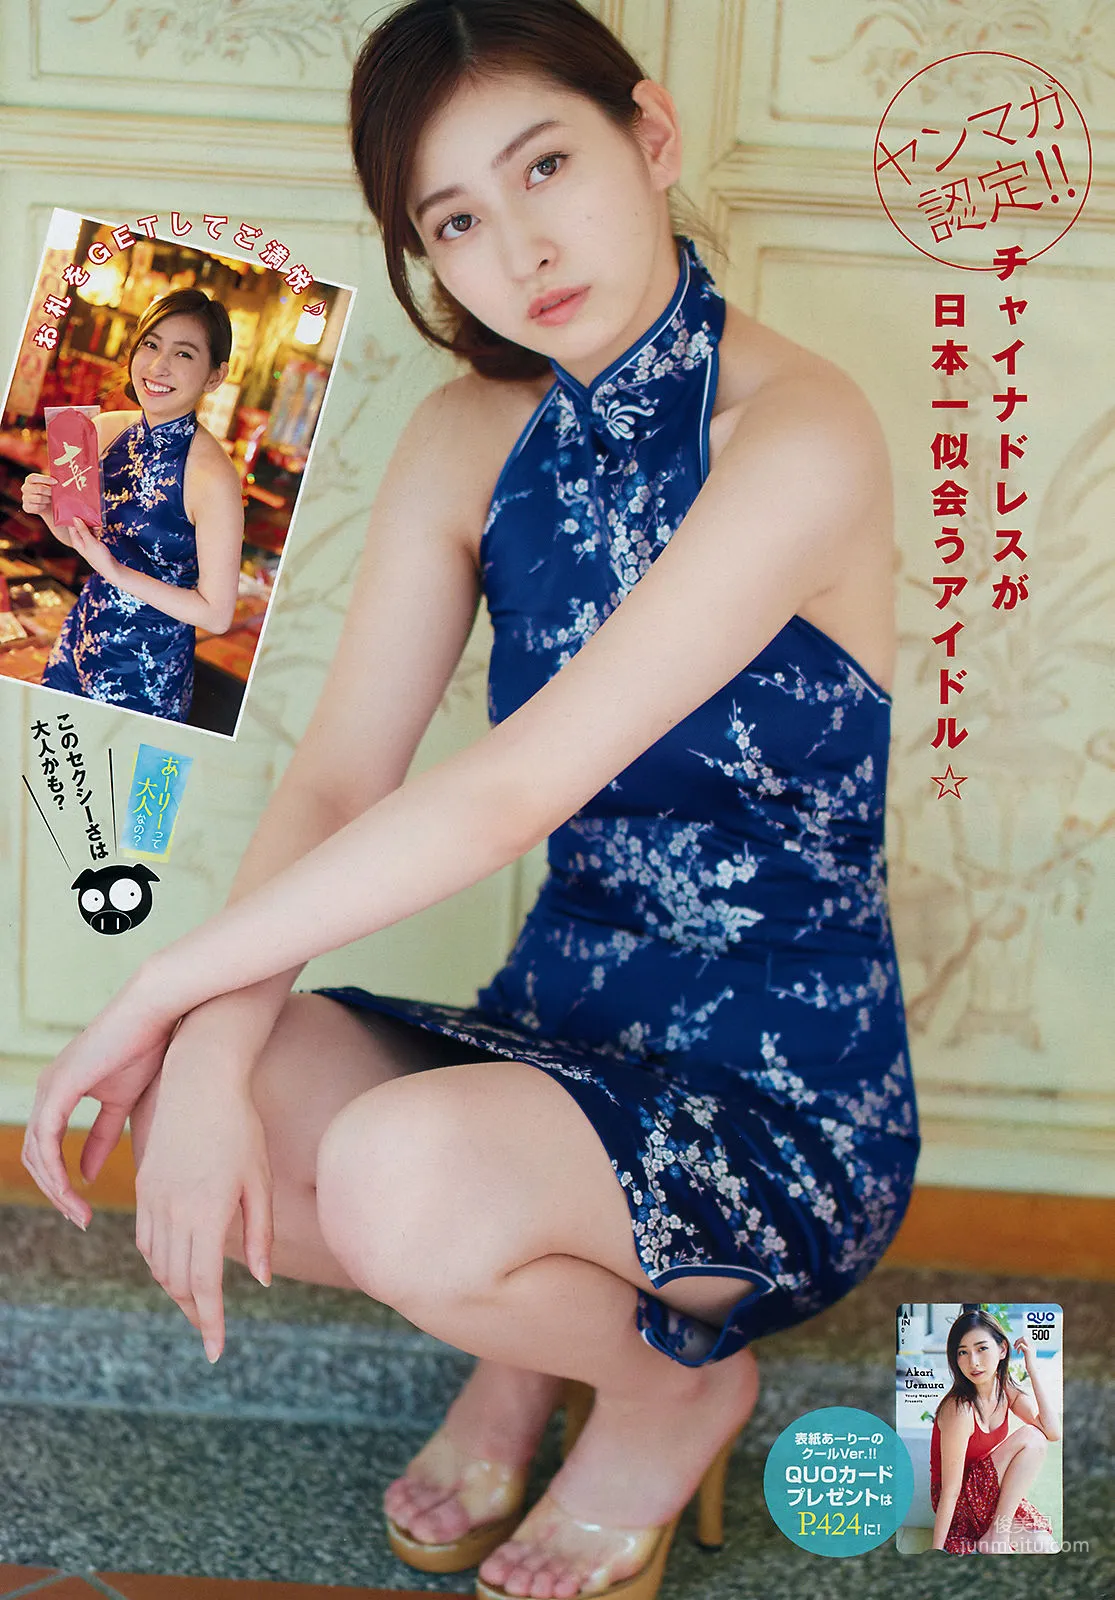 [Young Magazine] 植村あかり 林ゆめ 2018年No.31 写真杂志6